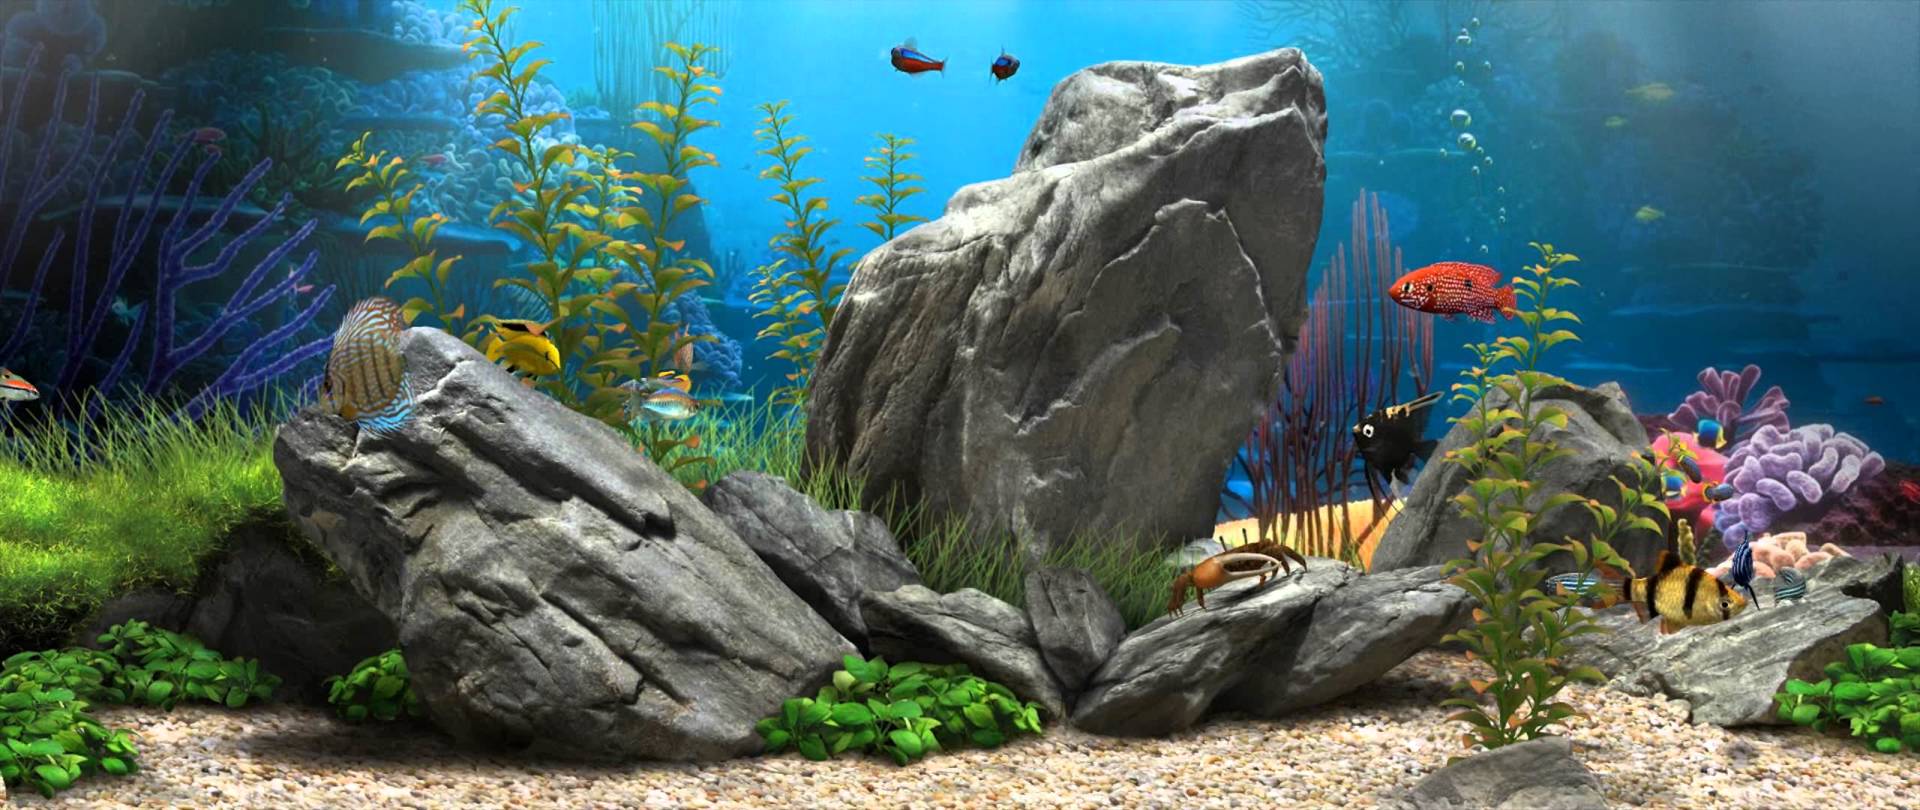 3D Fish Aquarium:9 [Live Wallpaper] - (1080p)